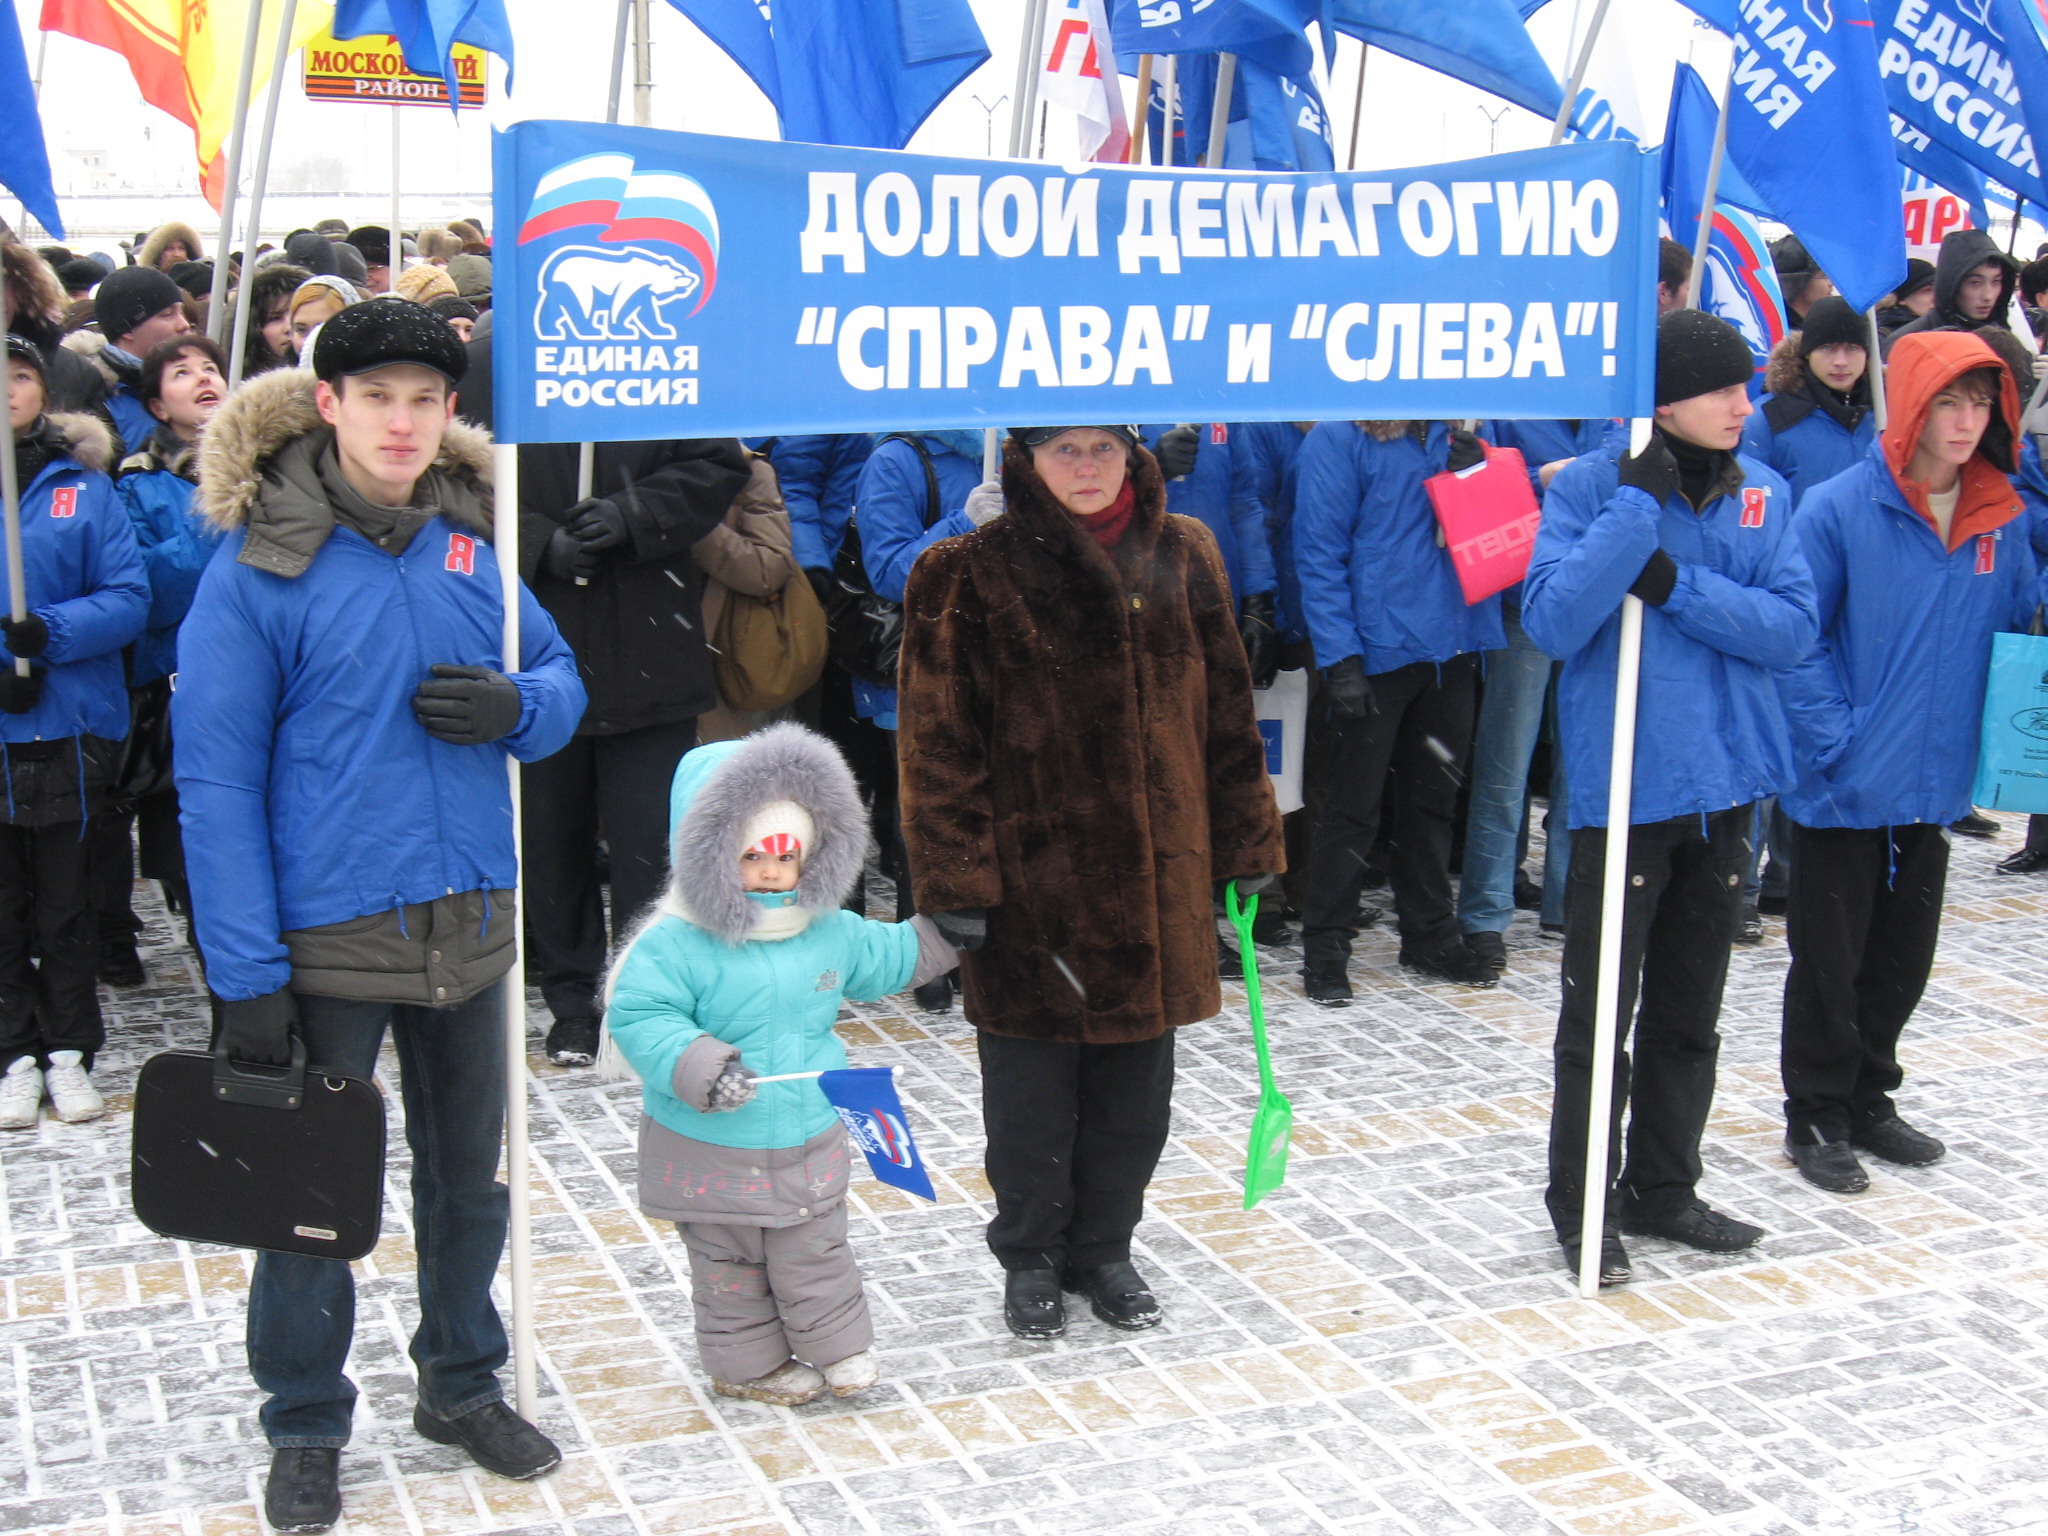 10:20 В г. Чебоксары прошел митинг по поддержке антикризисных мер руководства России и Чувашии  